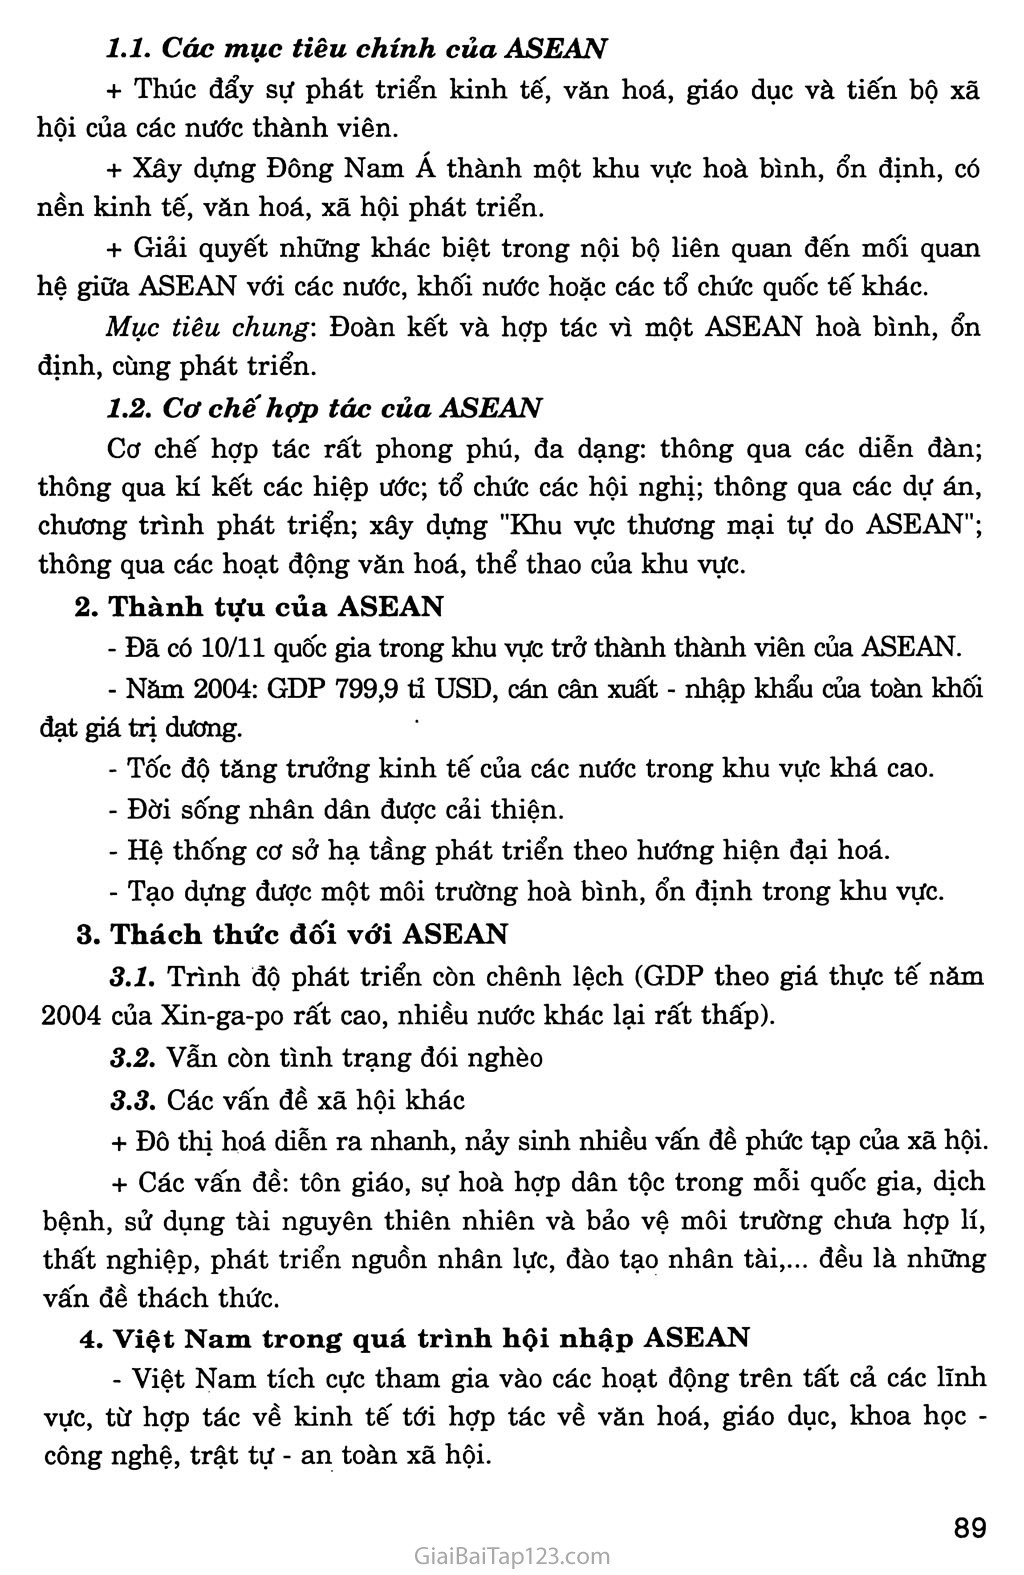 Tiết 3: Hiệp hội các nước Đông Nam Á (ASEAN) trang 2